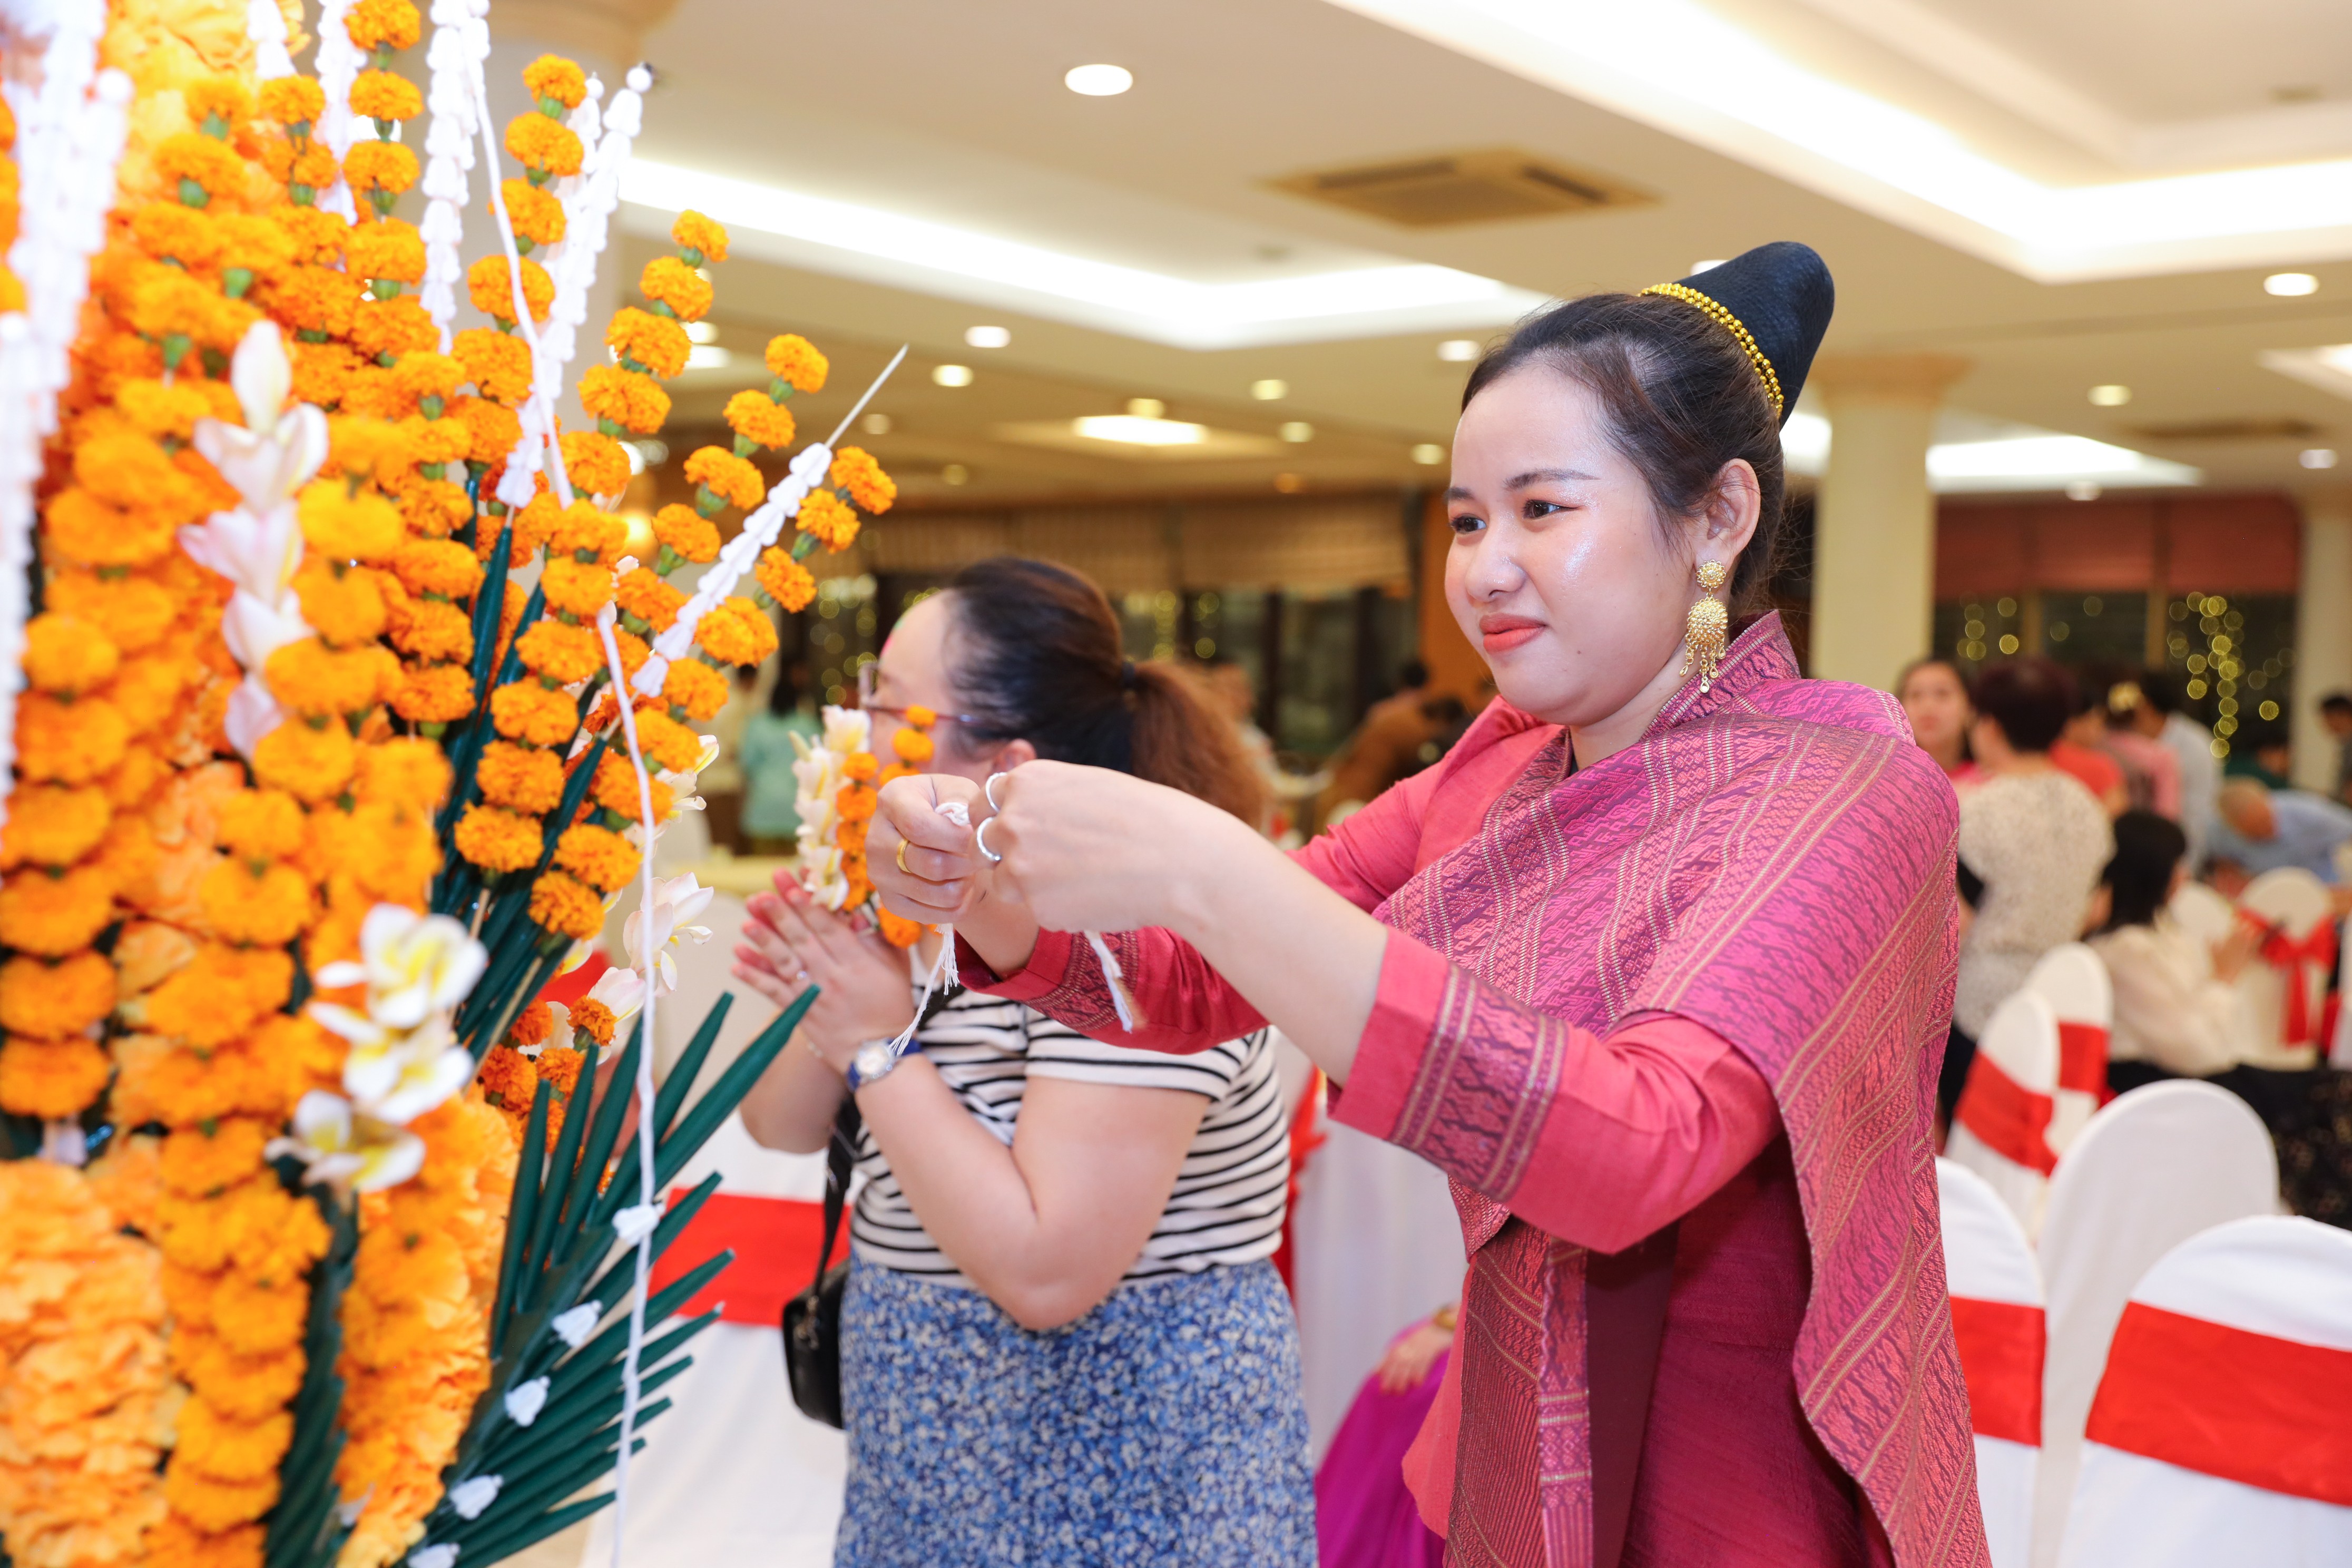 7 nước châu Á đón Tết cổ truyền tại Hà Nội